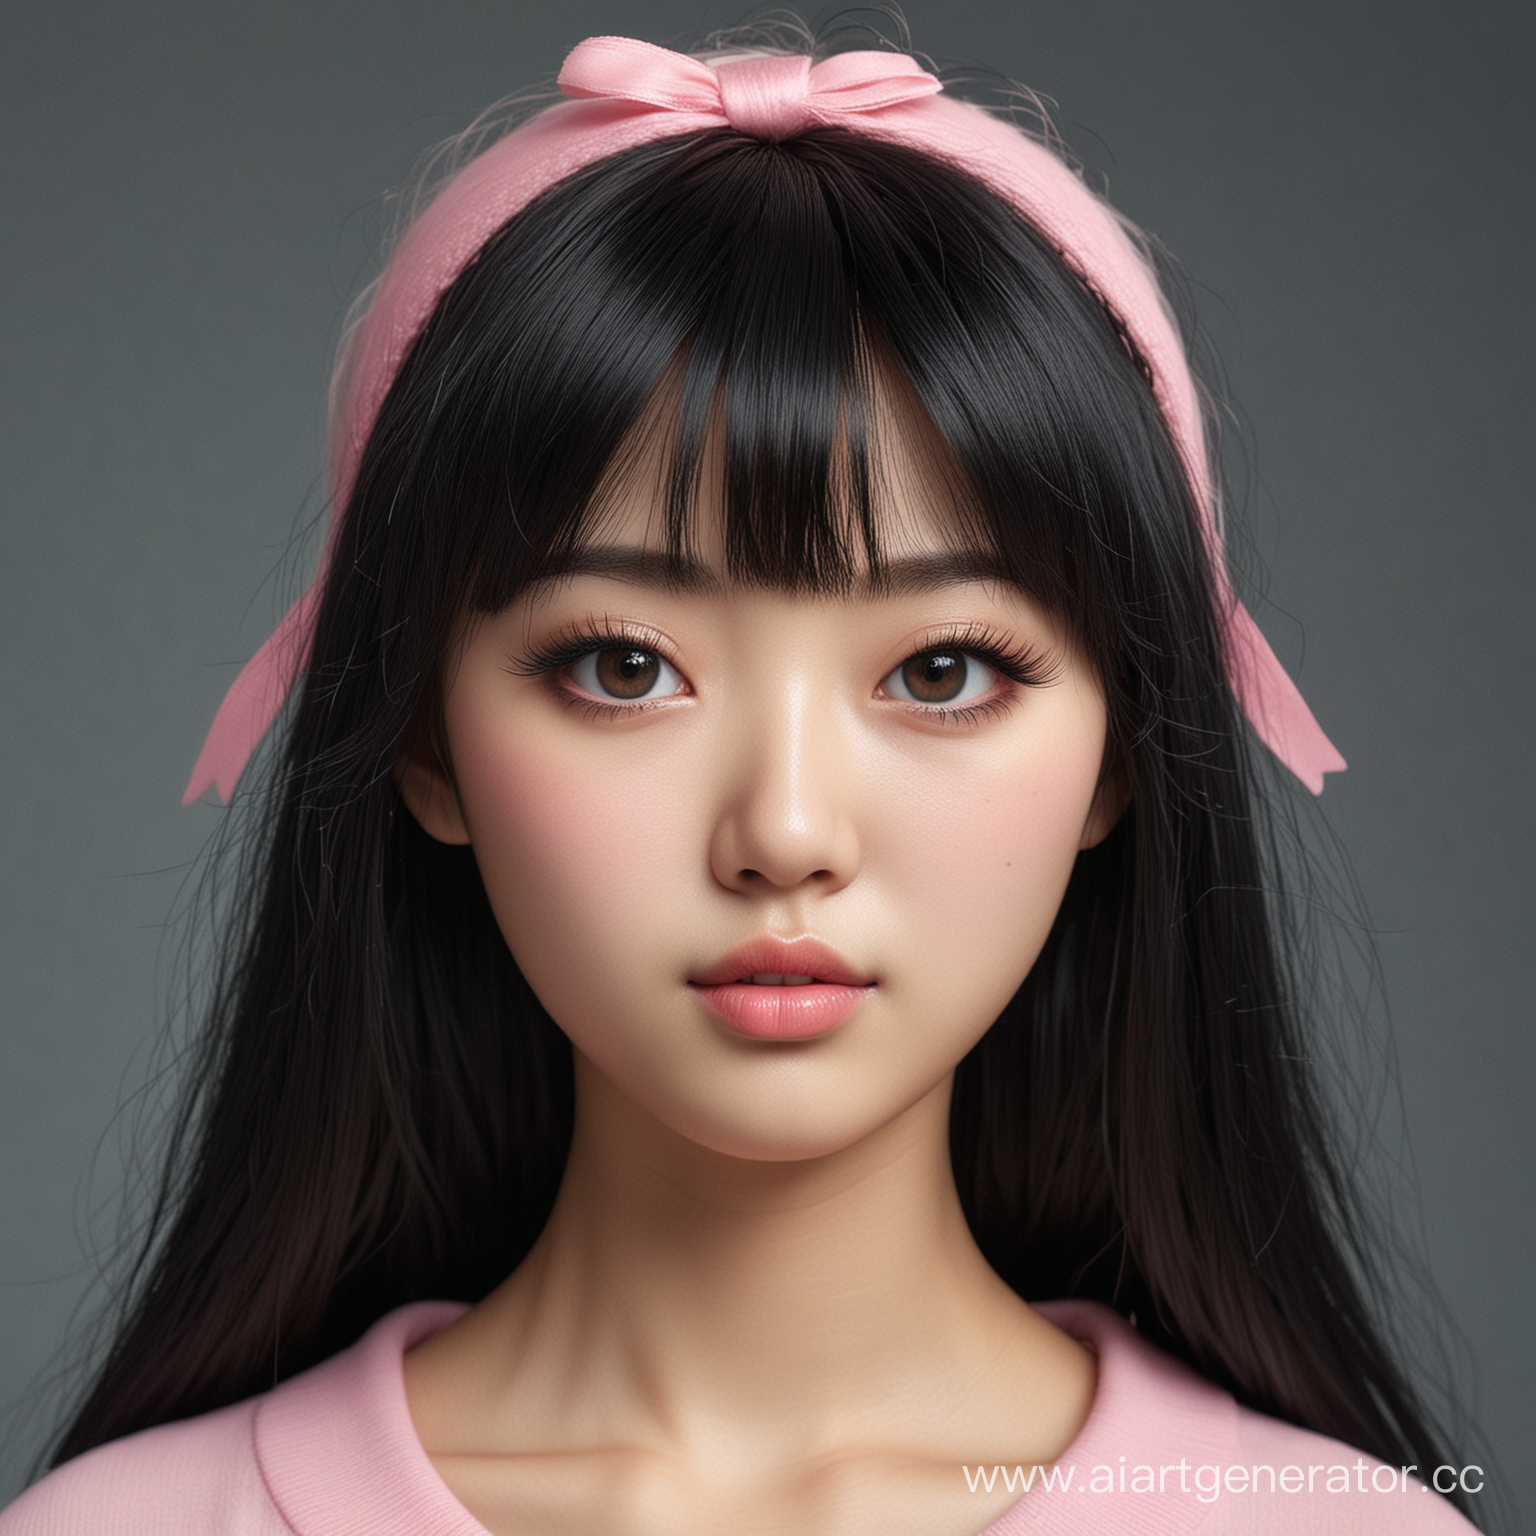 Портрет девушки азиатской внешности кореянки с худым лицом, большими чёрными глазами, кукольными ресницами, пухлыми розовыми губками, аккуратным маленьким носиком, точеными скулами, чёрными длинными волосами с редкой чёлкой, очень бледная кожа, 25 лет, Фотореалистично